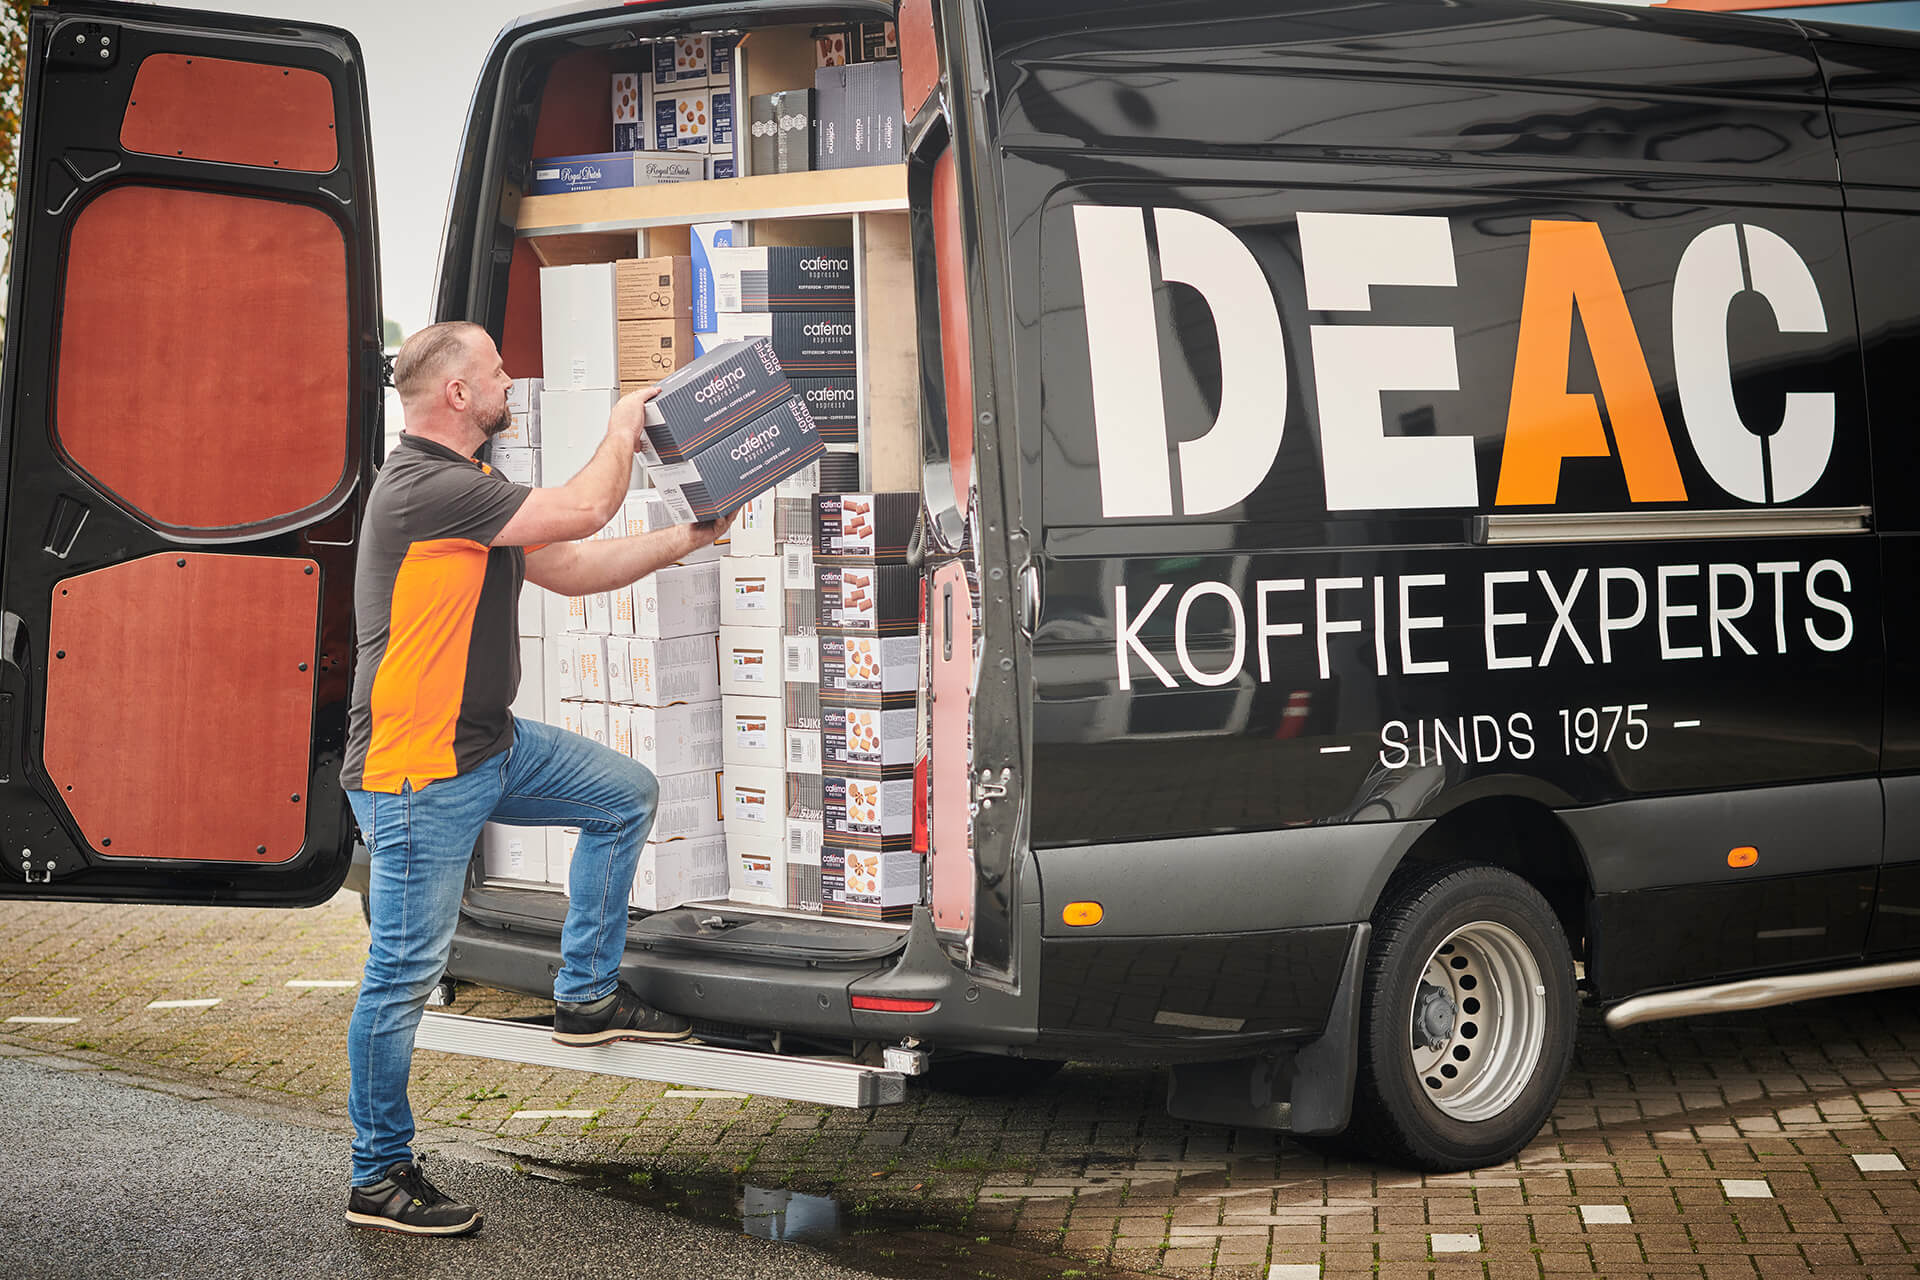 DEAC-koffie-experts-service-1920x1280-3.jpg